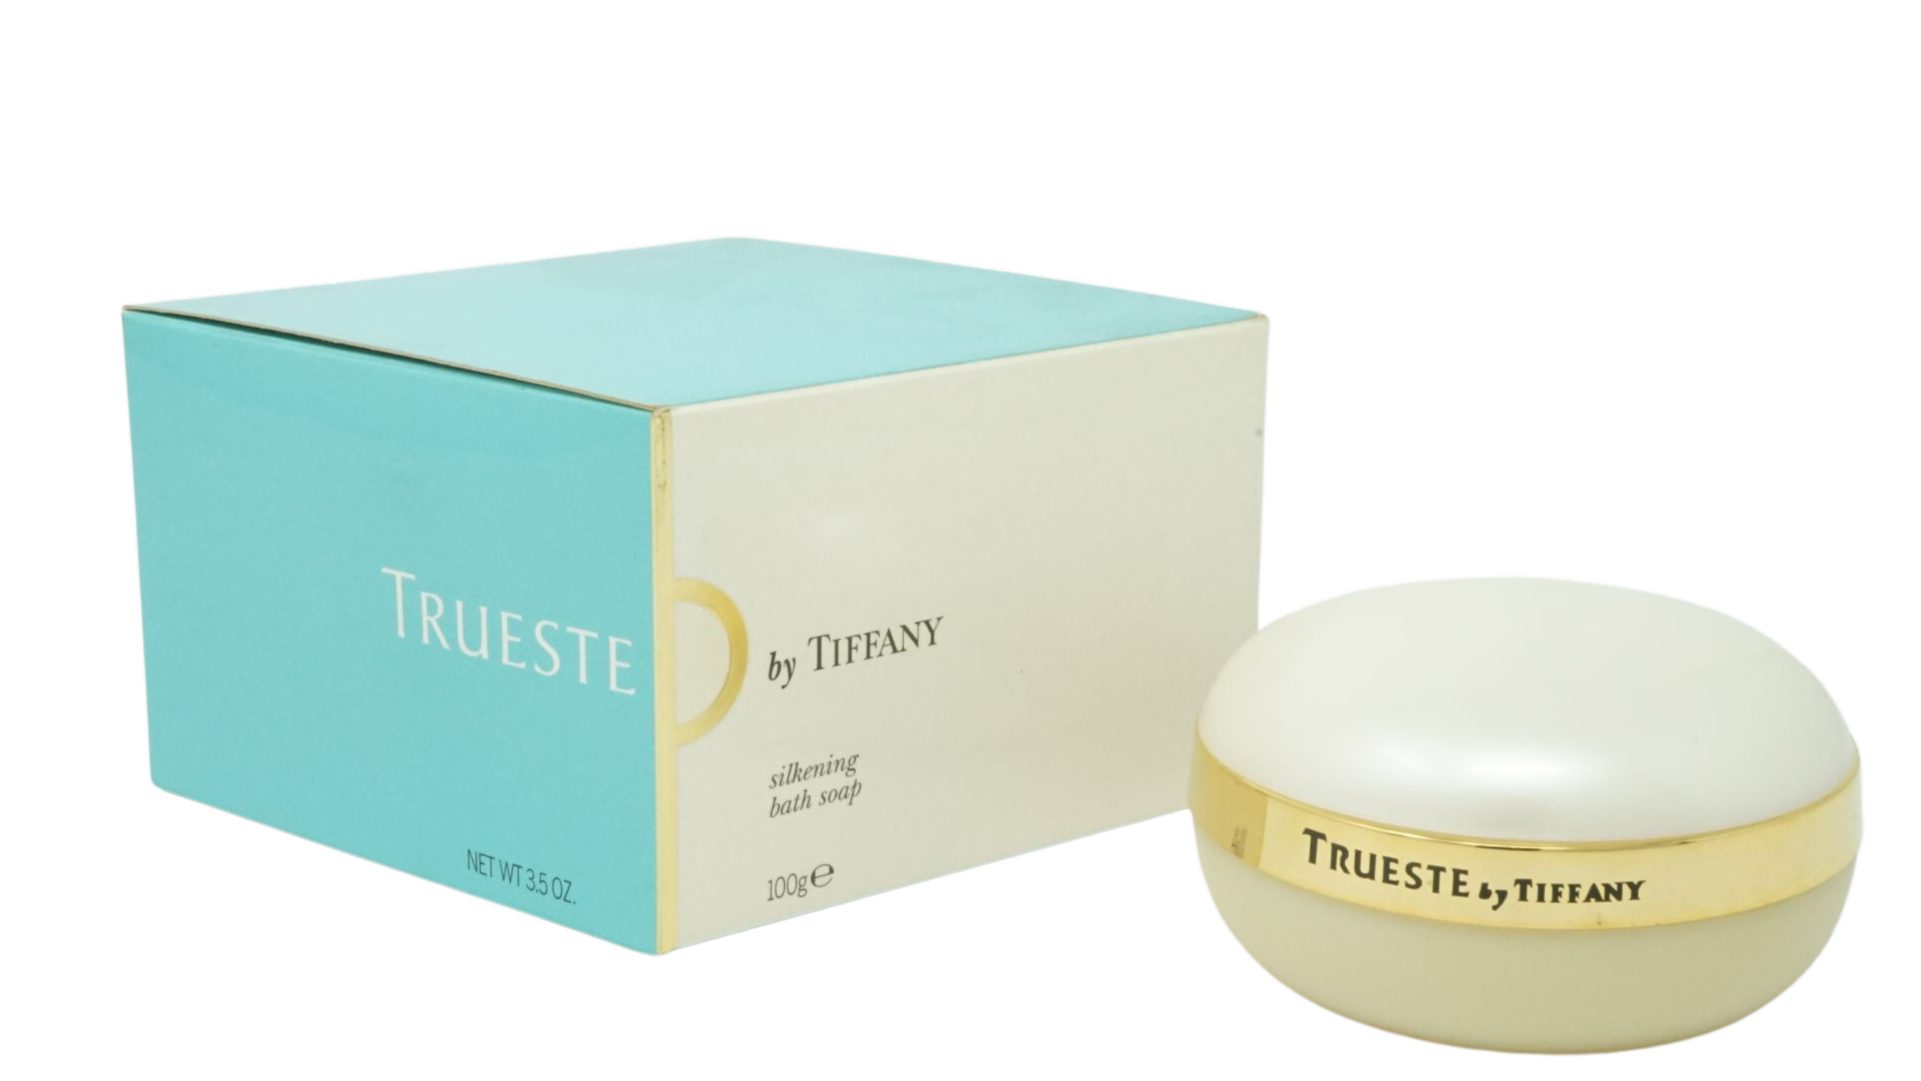 Tiffany Foundation Tiffany Trueste Silkening Bath Seife Soap 100g